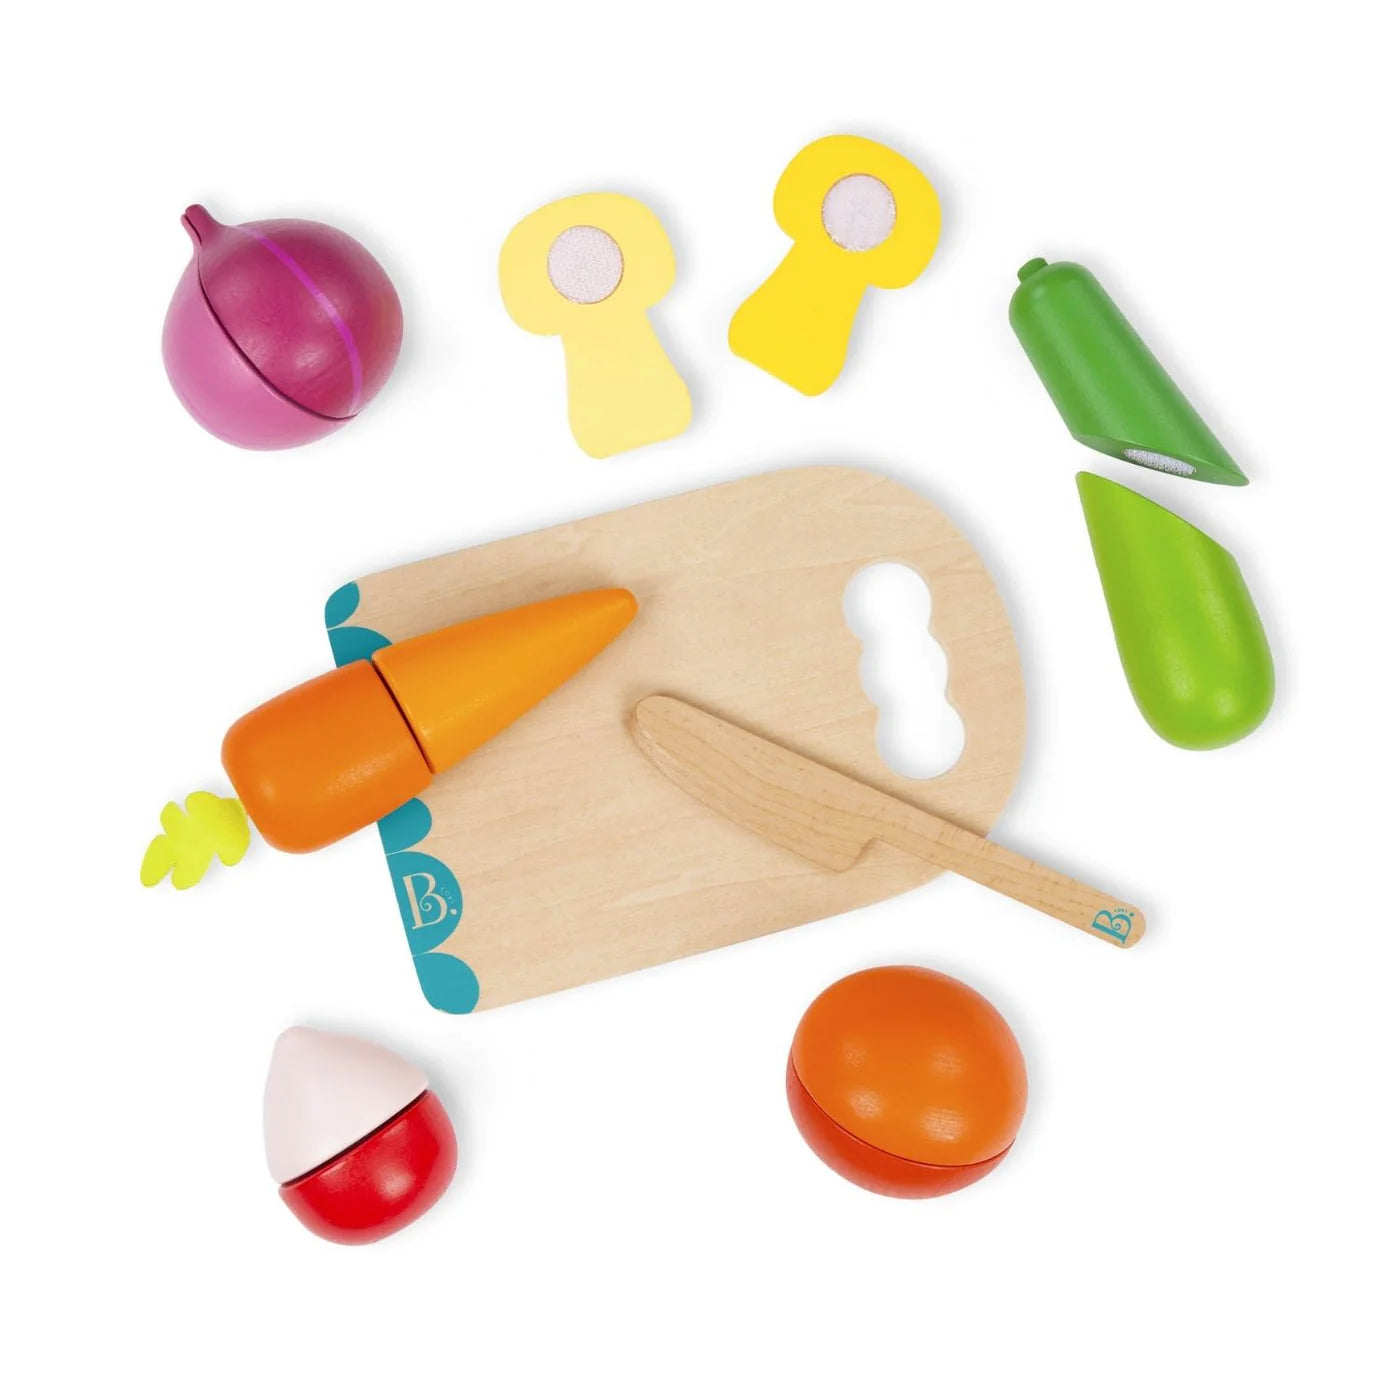 Chop ‘n’ Play - Vegetables Wooden Play Set